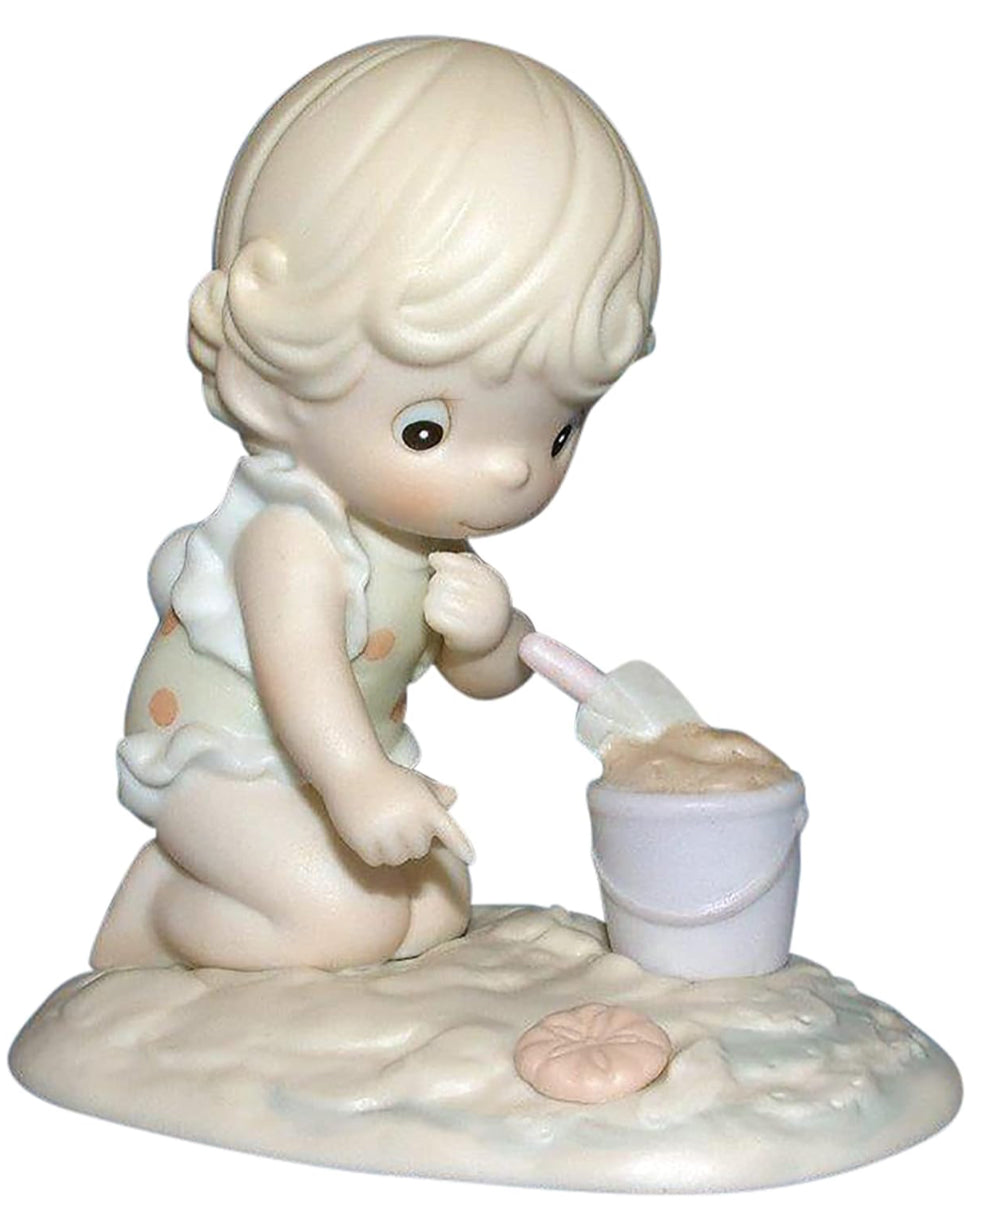 His Little Treasure - Precious Moments Figurine PM931